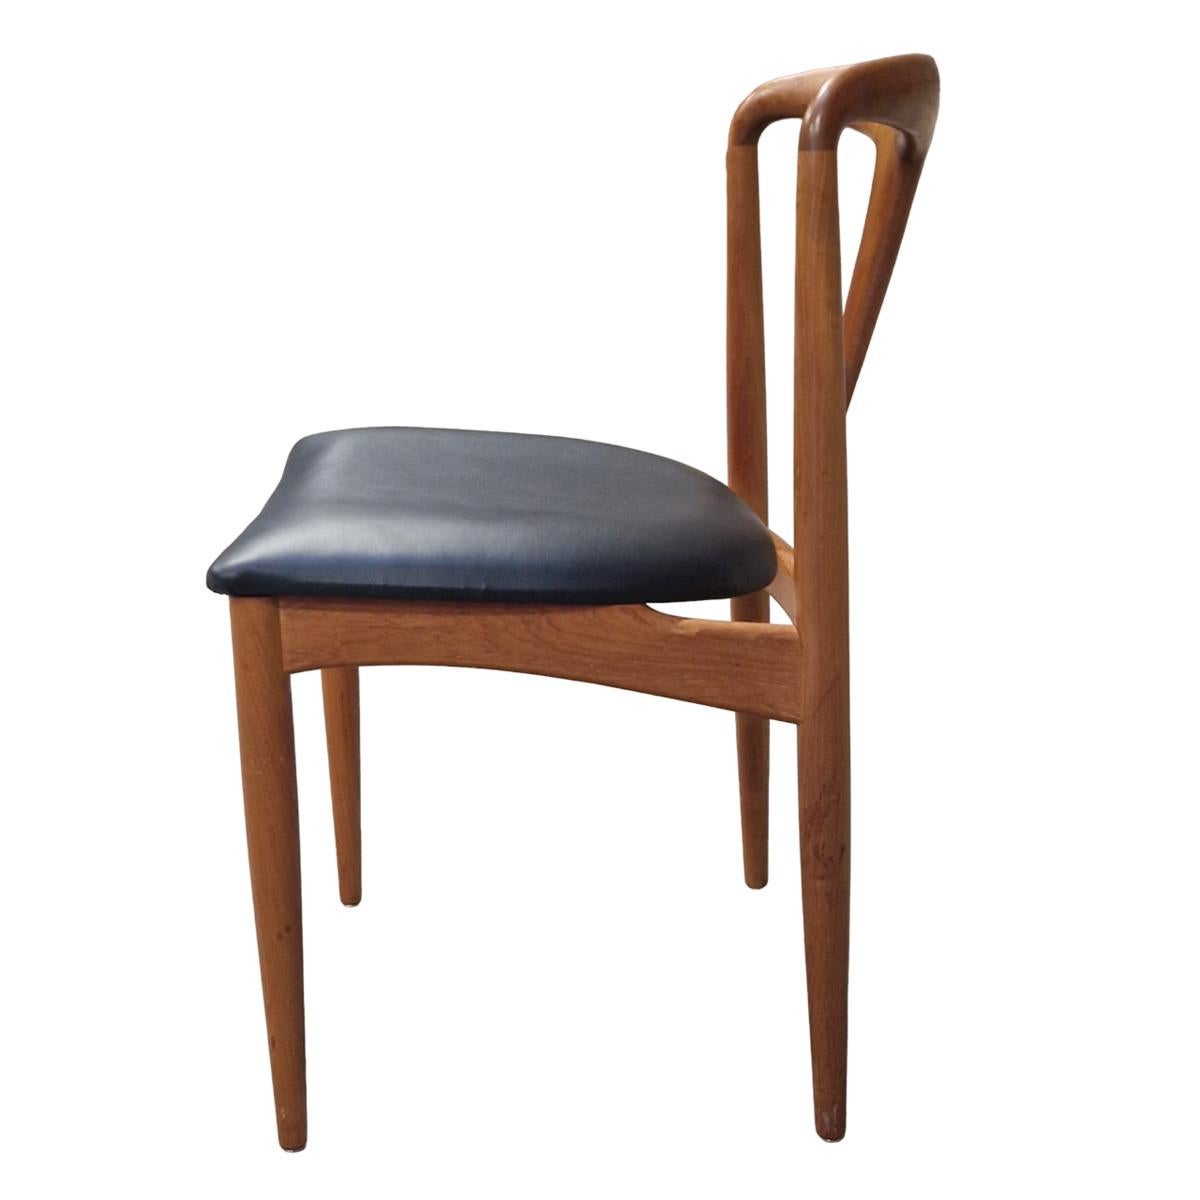 Johannès Andrsen war ein Holzschnitzer aus den ersten Jahren des 20. Er fühlt sich besonders zu glatten Formen, kurvigen und organischen Bewegungen hingezogen. Dies spiegelt sich in den meisten seiner Arbeiten wider. Diese Stühle haben zum Beispiel